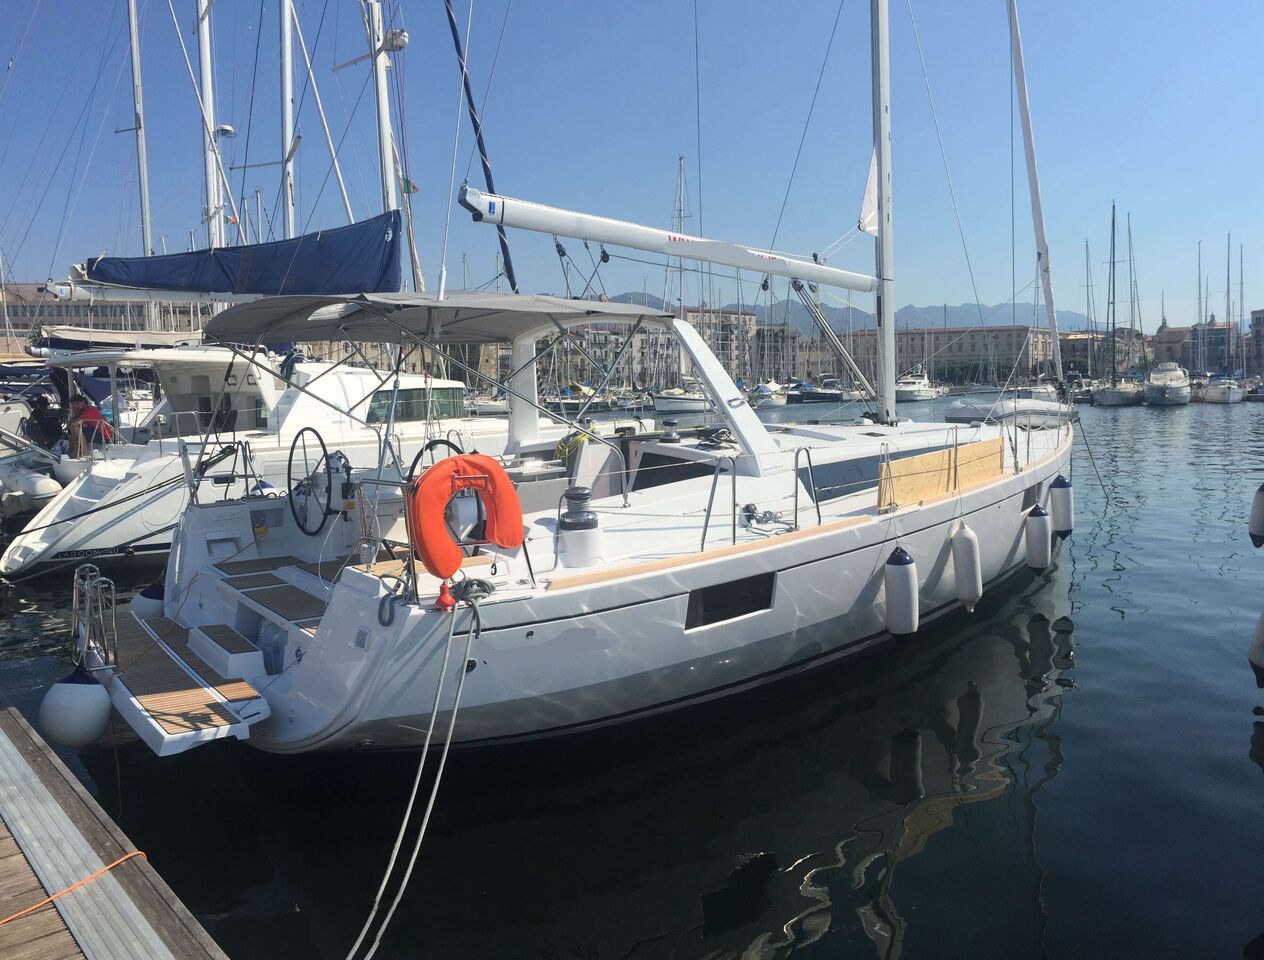 Bénéteau Océanis 48 (sailboat) for sale